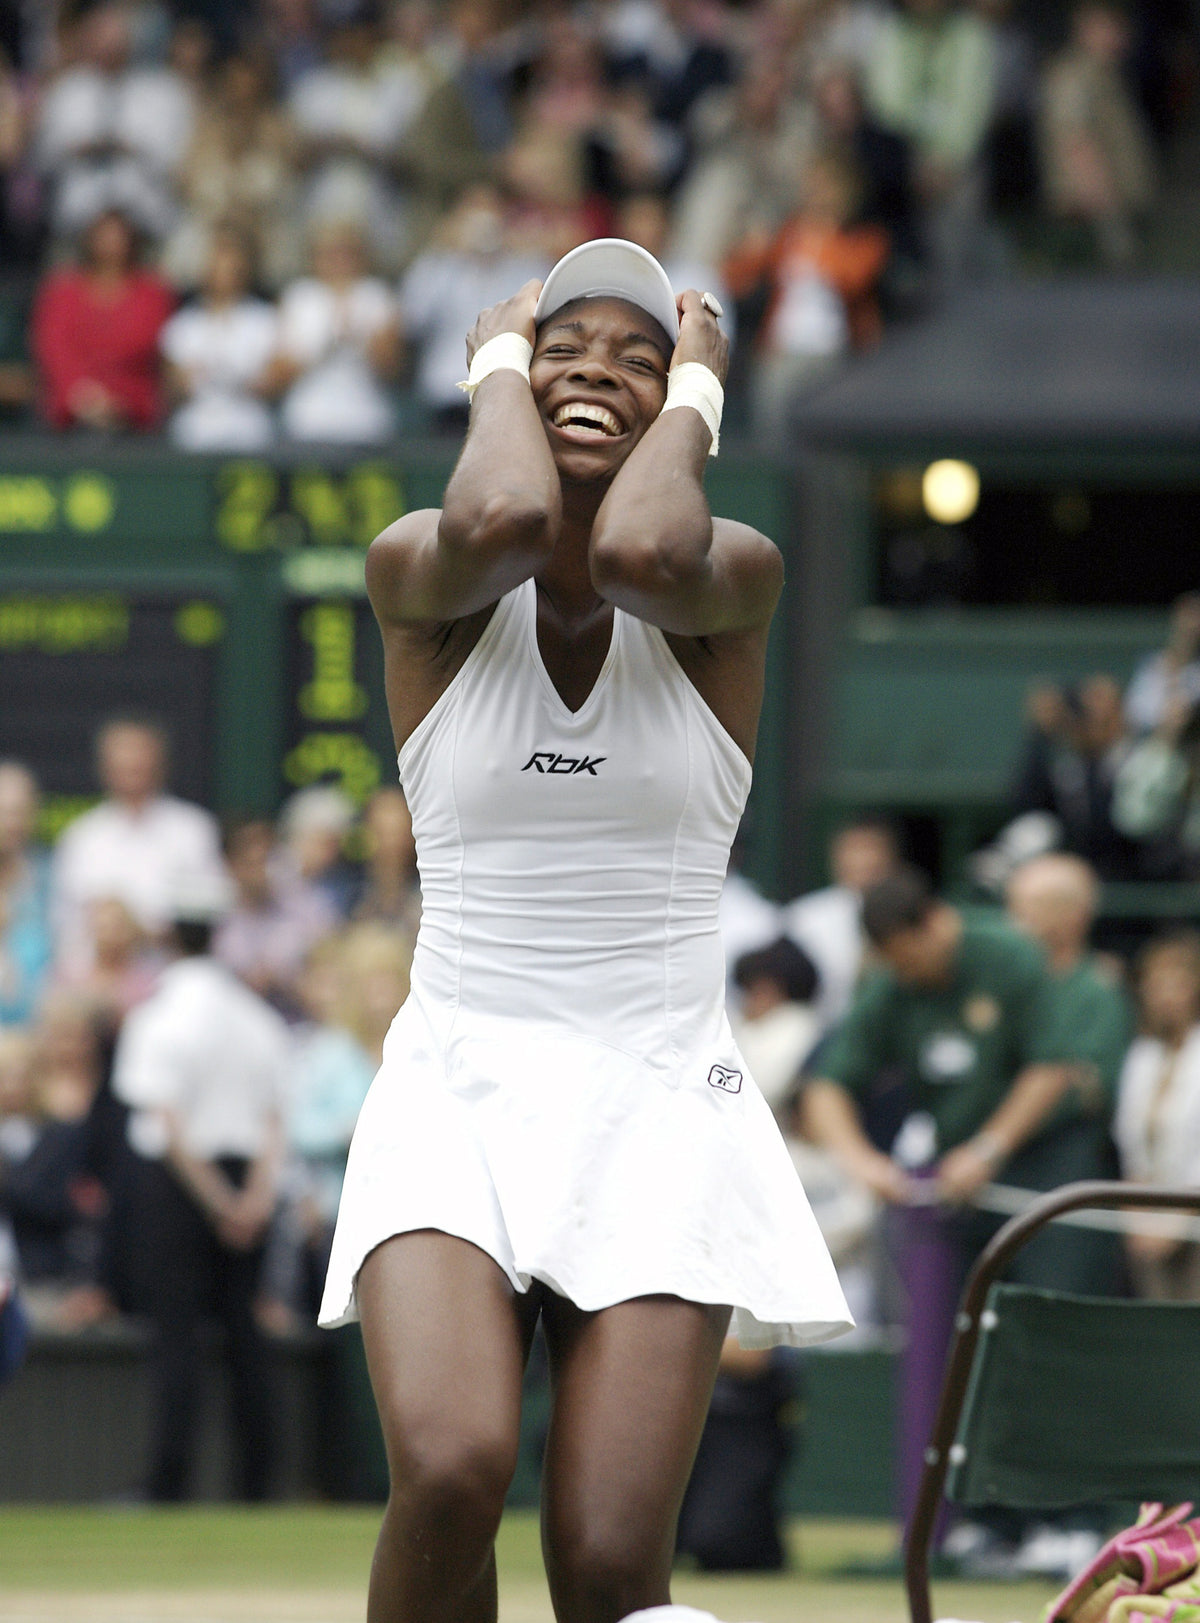 Venus Williams Winning at Wimbledon